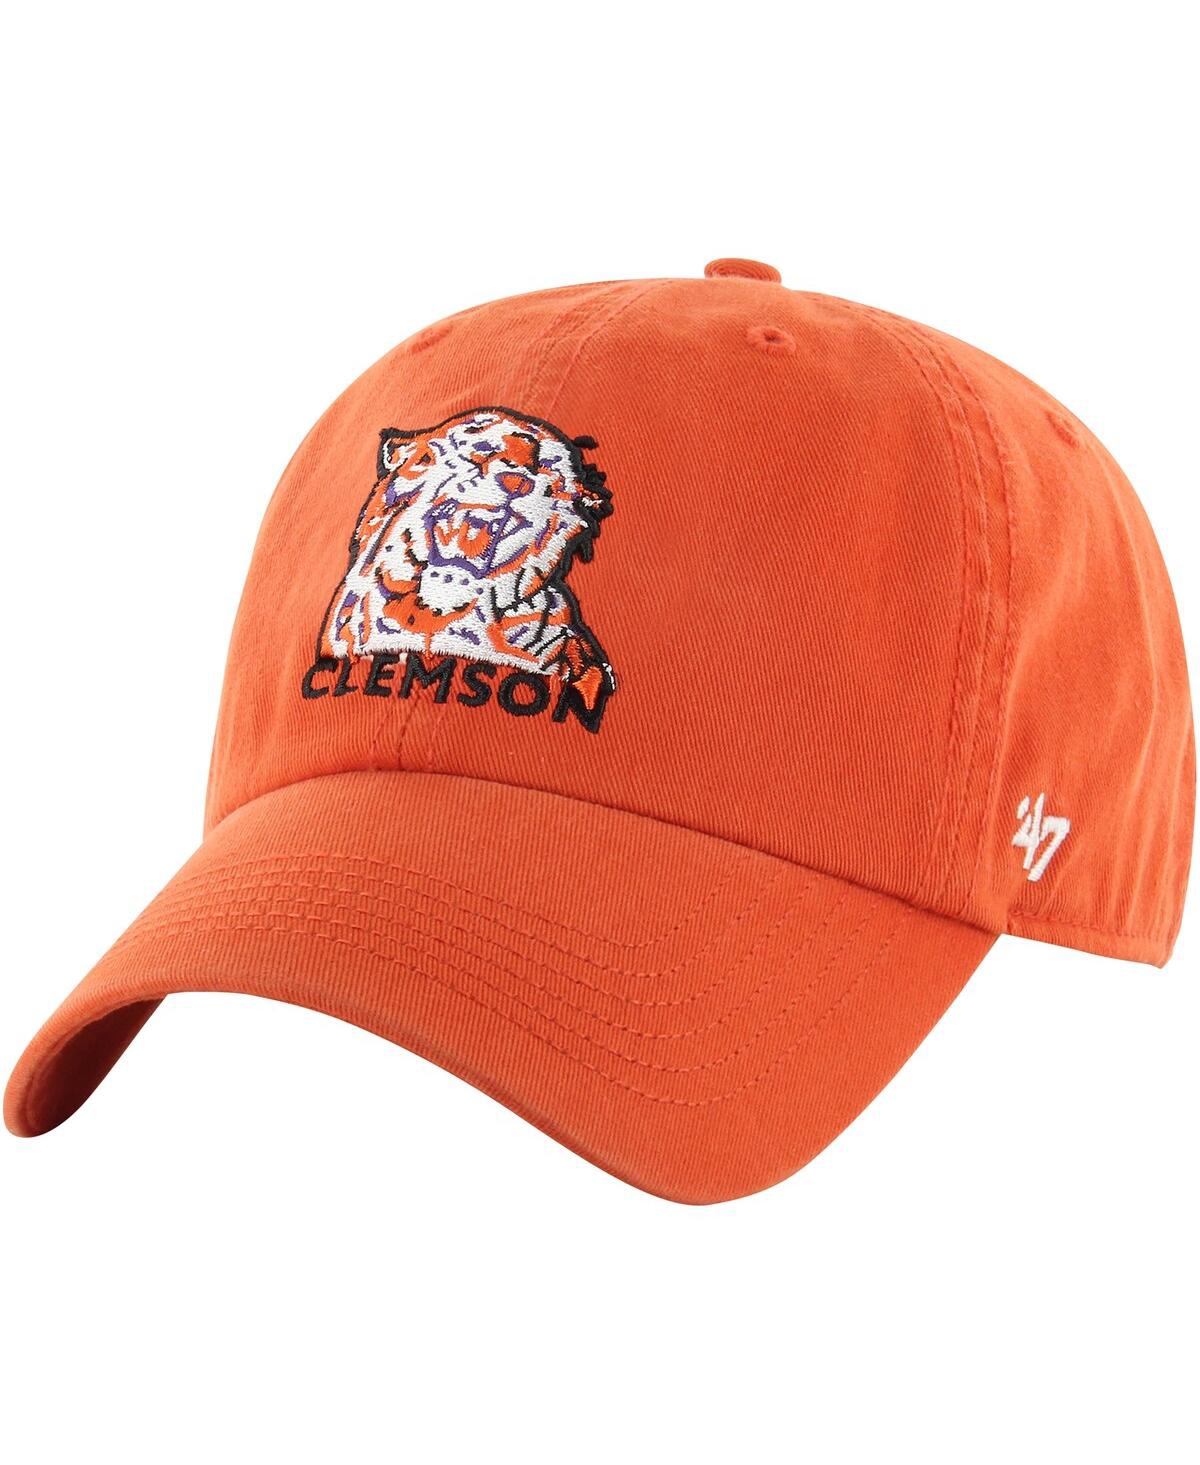 Men's '47 Brand Orange Clemson Tigers Franchise Fitted Hat - Orange